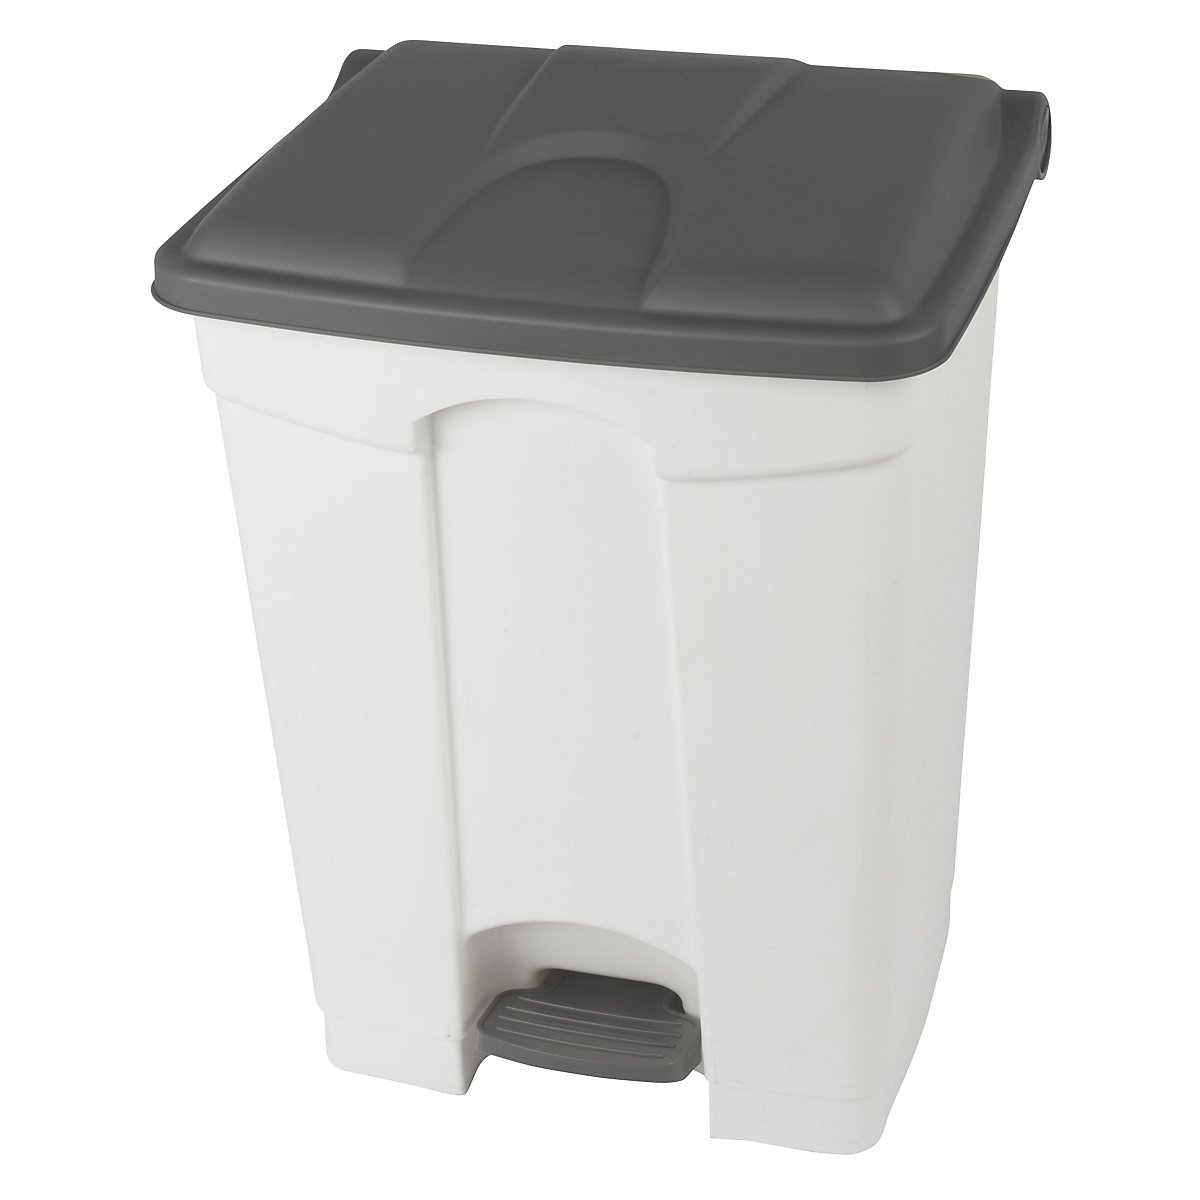 EUROKRAFTbasic – Nádoba na odpad s pedálem, objem 70 l, š x v x h 505 x 675 x 415 mm, bílá, šedé víko